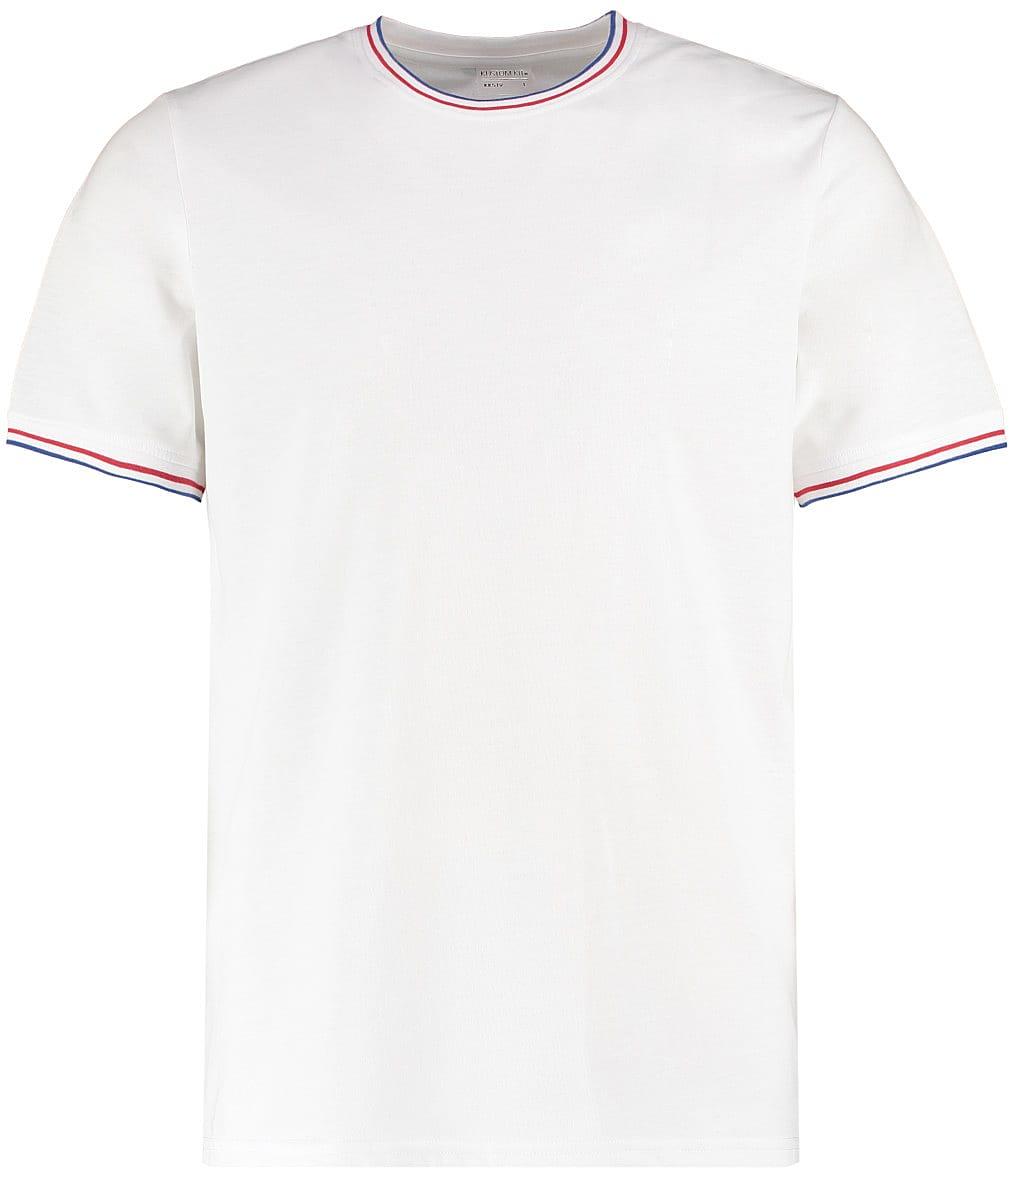 Kustom Kit Mens Tipped T-Shirt in White / Red / Royal (Product Code: KK519)